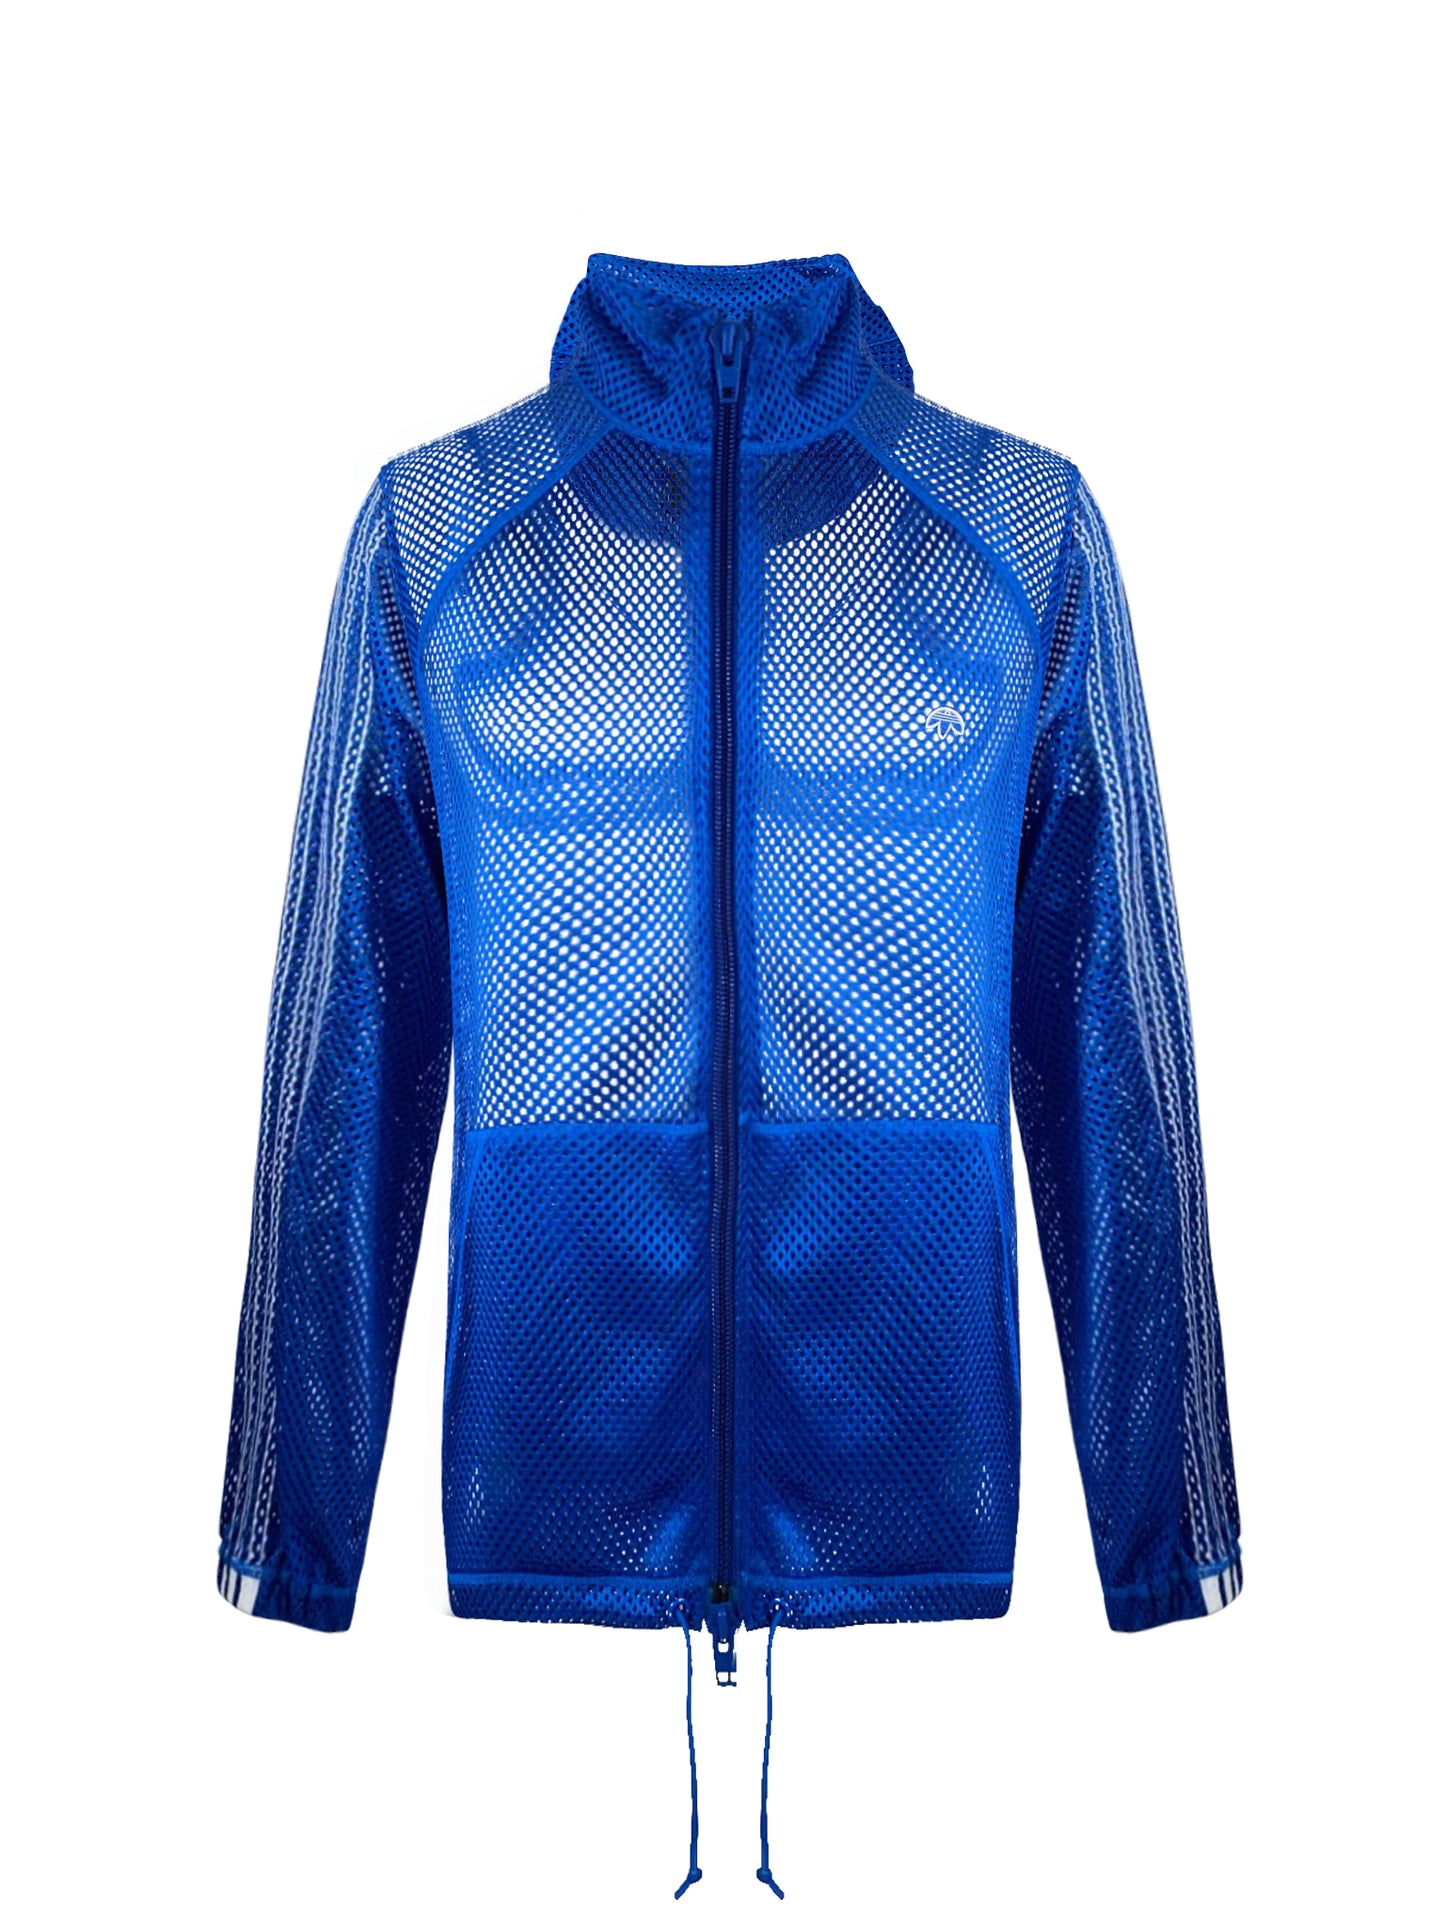 Adidas Track Top "Alexander Wang Mesh TT Blubir Bleazu" - Blue